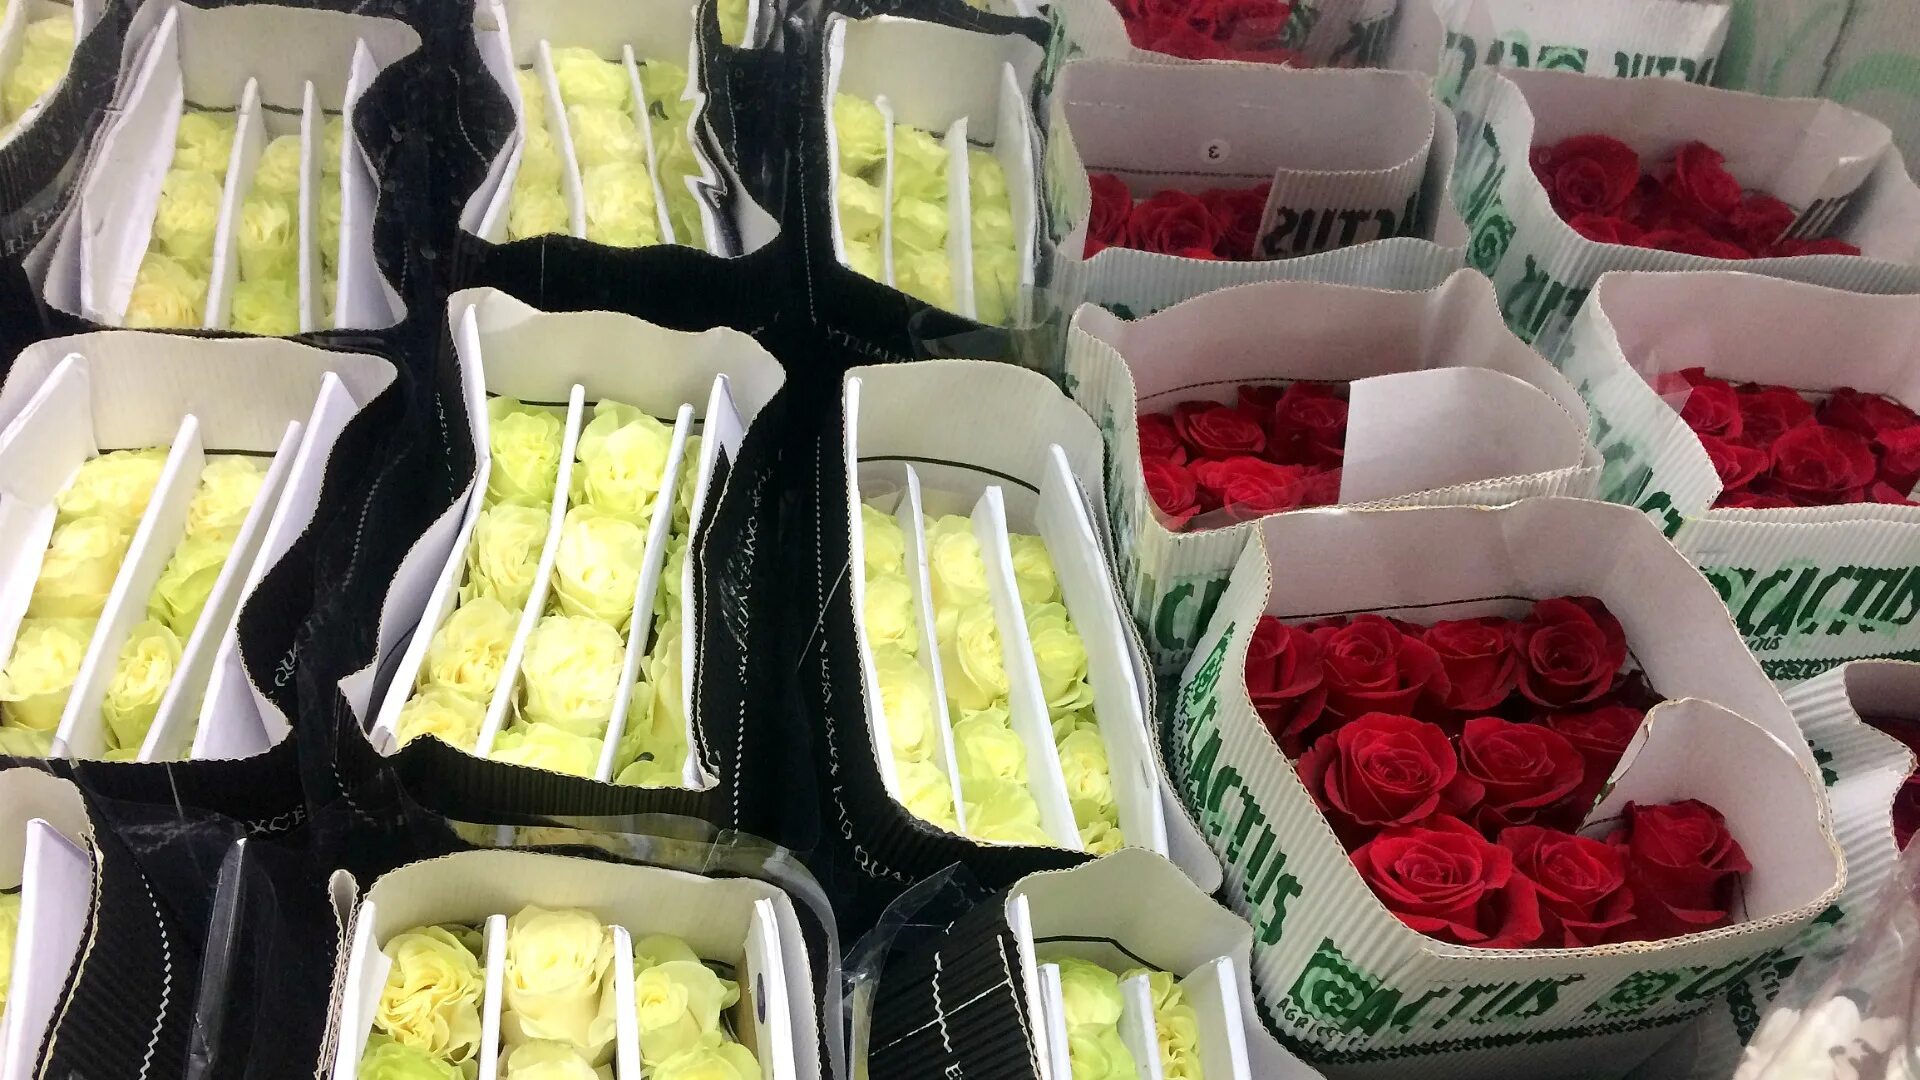 Купить розы от производителя